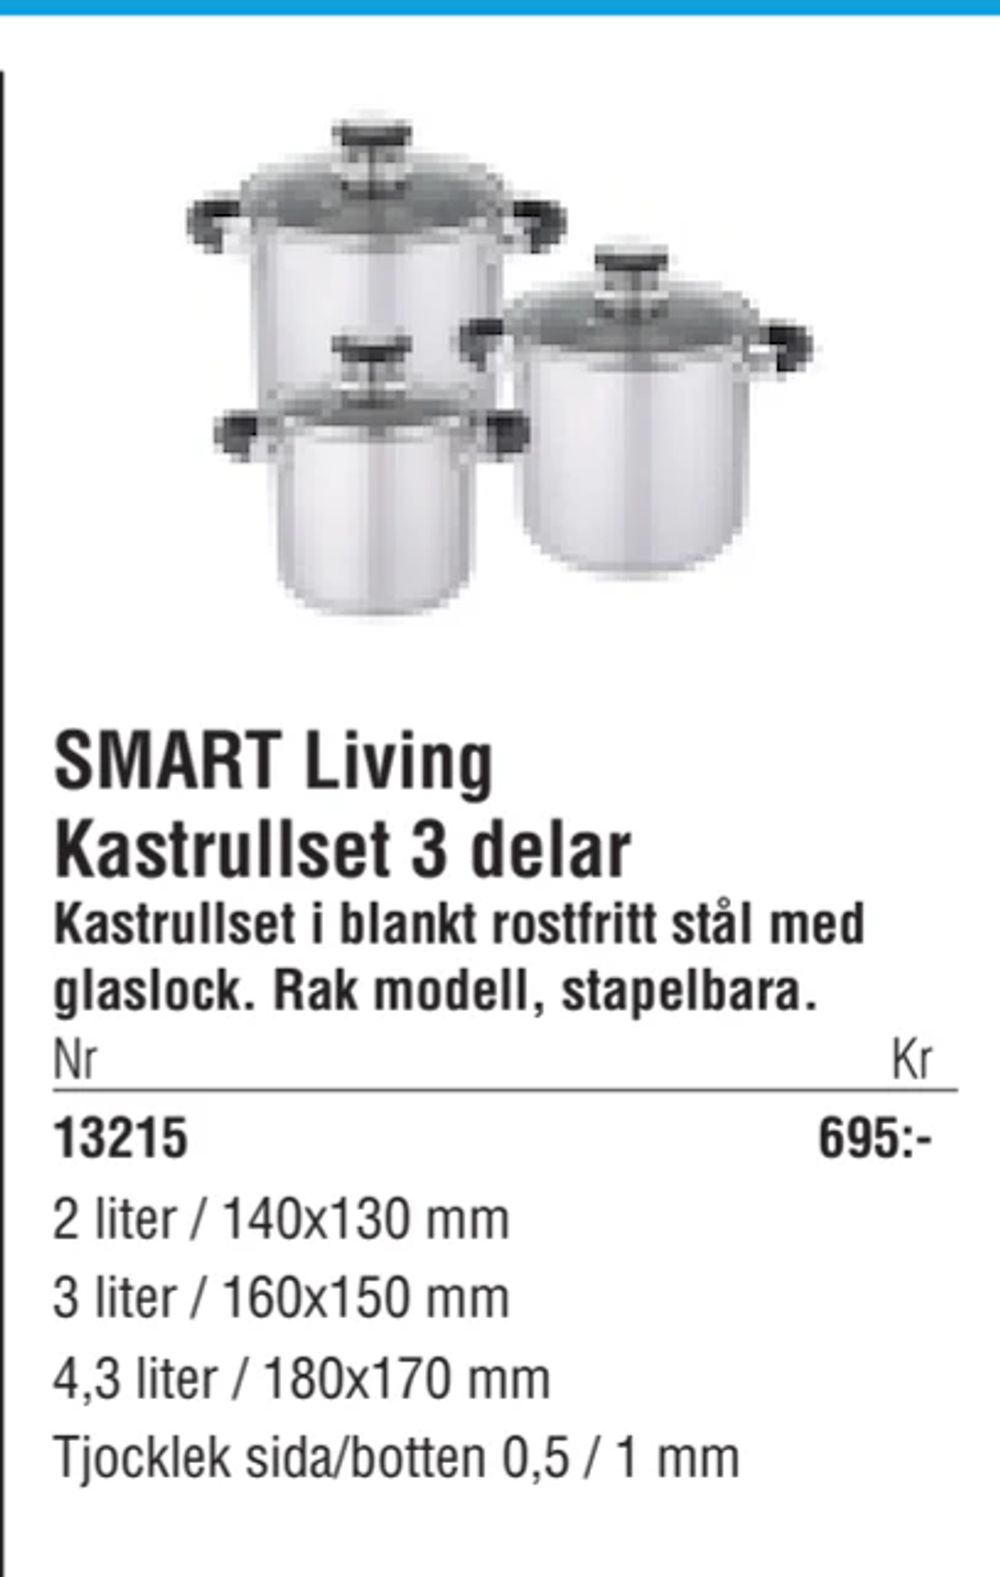 Erbjudanden på SMART Living Kastrullset 3 delar från Erlandsons Brygga för 695 kr